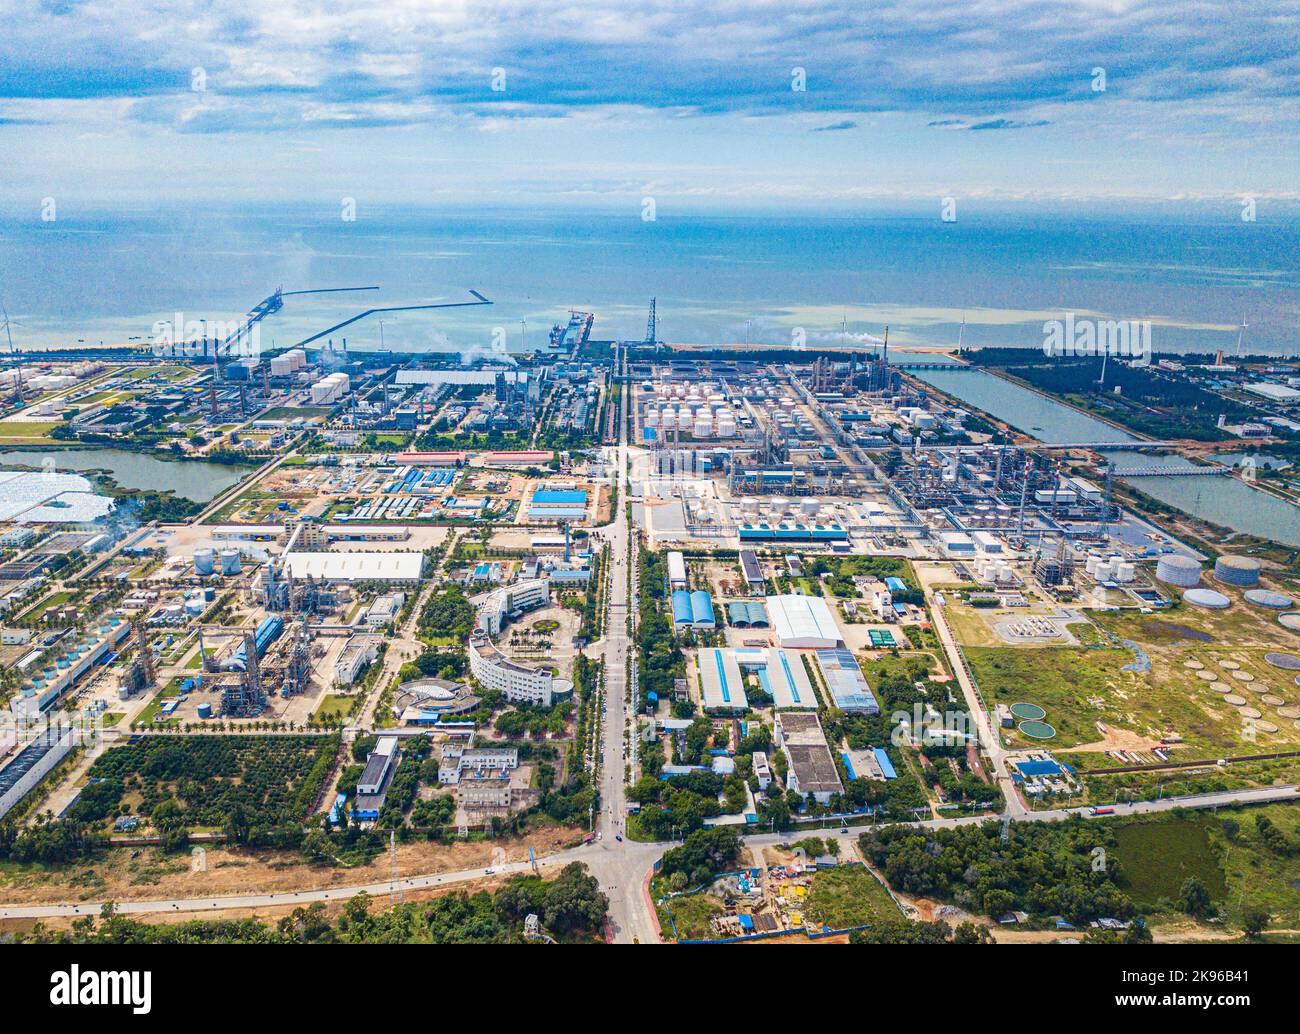 Dongfang. 20. Oktober 2022. Dieses Luftfoto, das am 20. Oktober 2022 aufgenommen wurde, zeigt den Dongfang Lingang Industriepark in der Stadt Dongfang, südchinesische Provinz Hainan. Der Dongfang Lingang Industrial Park in der Stadt Dongfang ist einer der wichtigsten Parks des Freihandels-Hafens von Hainan. Der Industriepark bildet sich allmählich zu einer High-Tech-Industriebasis mit petrochemischen neuen Materialien, der Herstellung von Schiffsausrüstungen und sauberer Energie. Quelle: Pu Xiaoxu/Xinhua/Alamy Live News Stockfoto